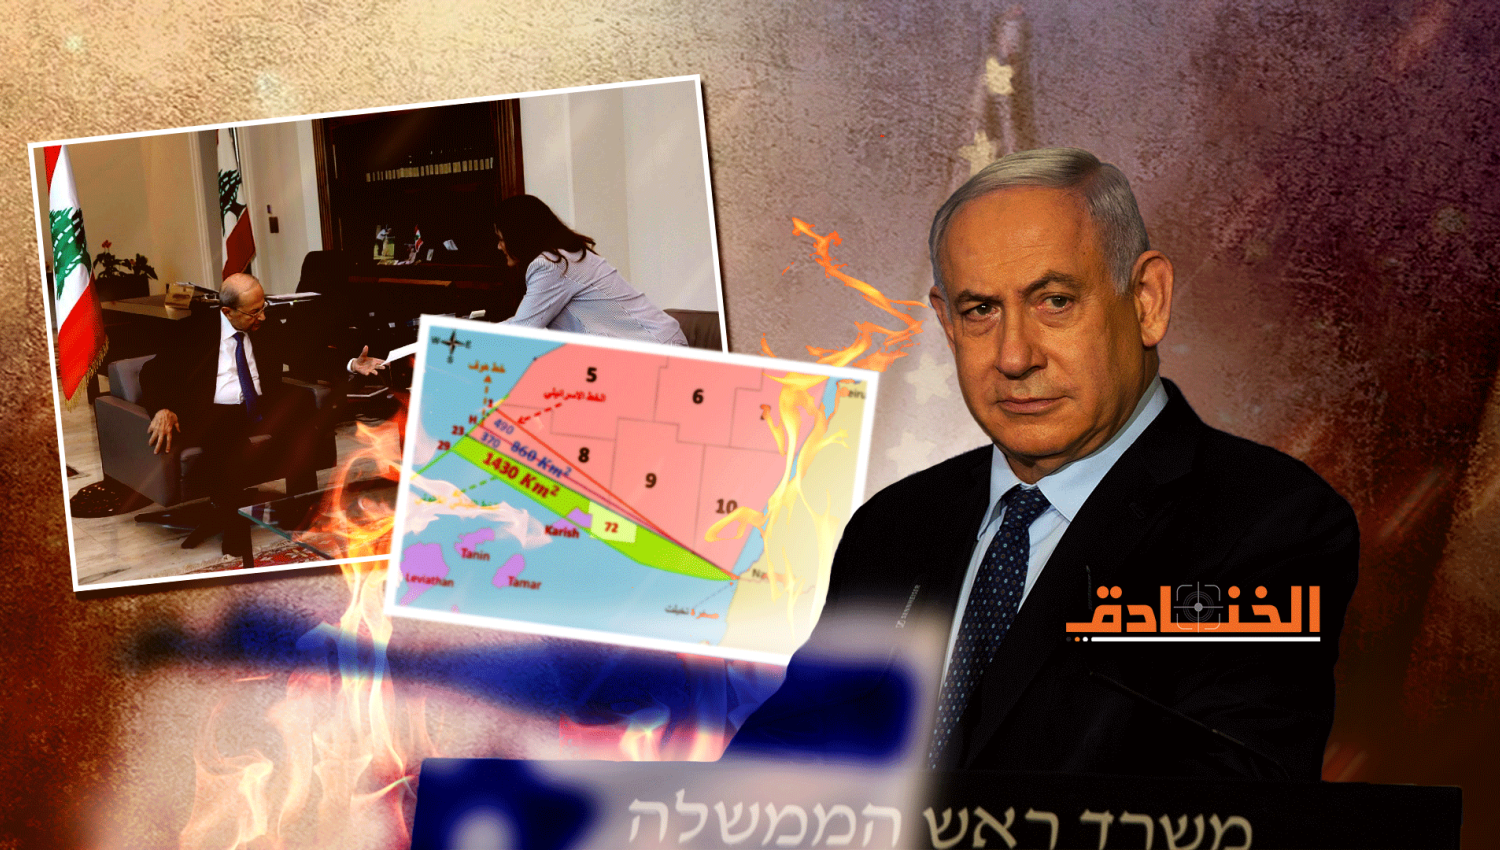 إسرائيل هيوم: الادعاء بأن المال سيضخ إلى حزب الله هراء